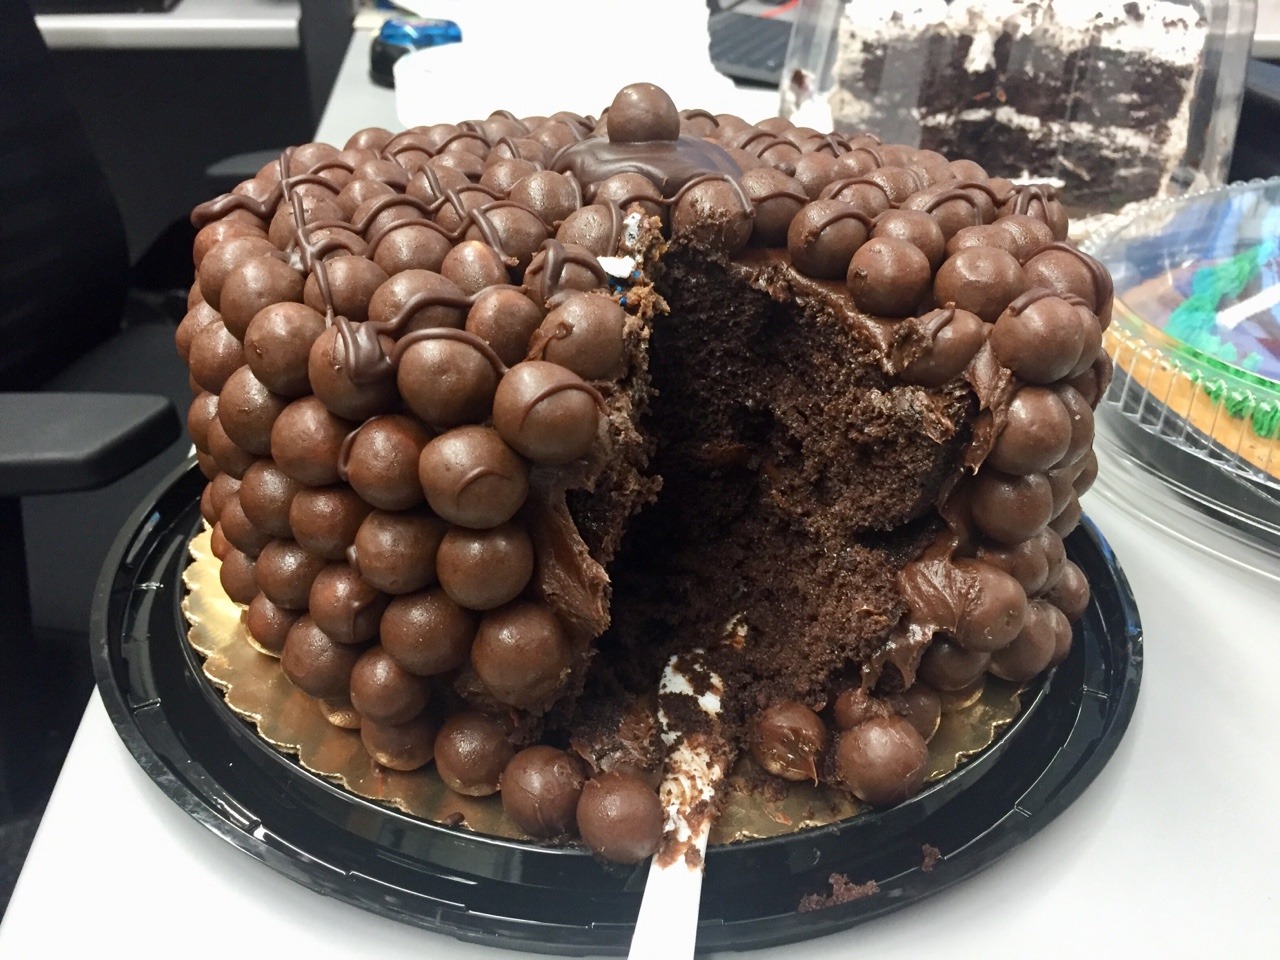 Food Porn â€” Chocolate Covered Malt-Ball Cake #FoodPorn ðŸ˜® ðŸ‘€ ðŸŽ‚